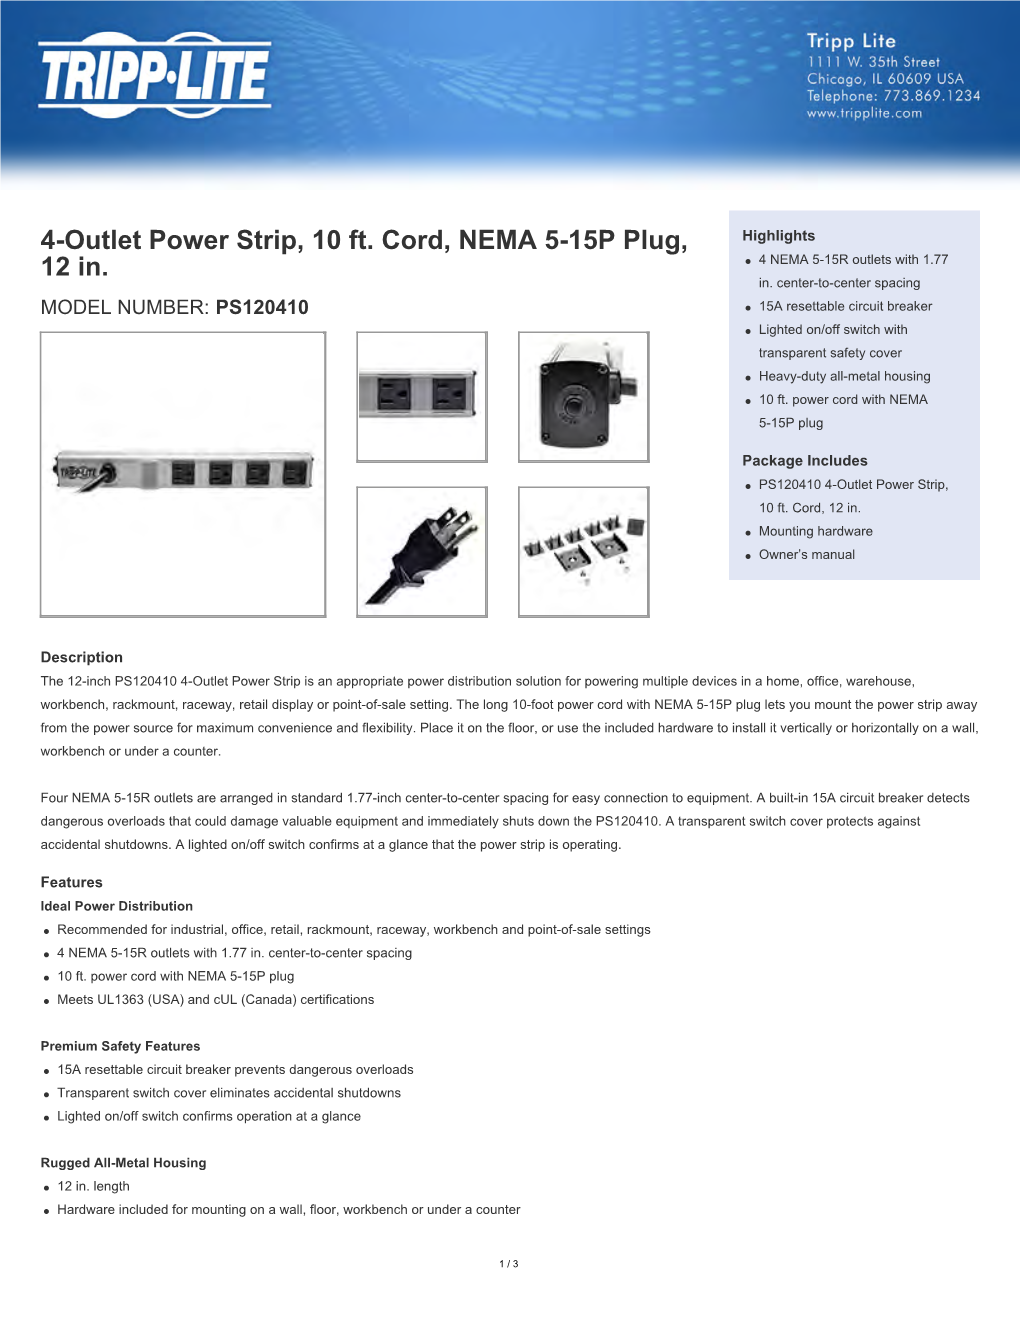 4-Outlet Power Strip, 10 Ft. Cord, NEMA 5-15P Plug, 12